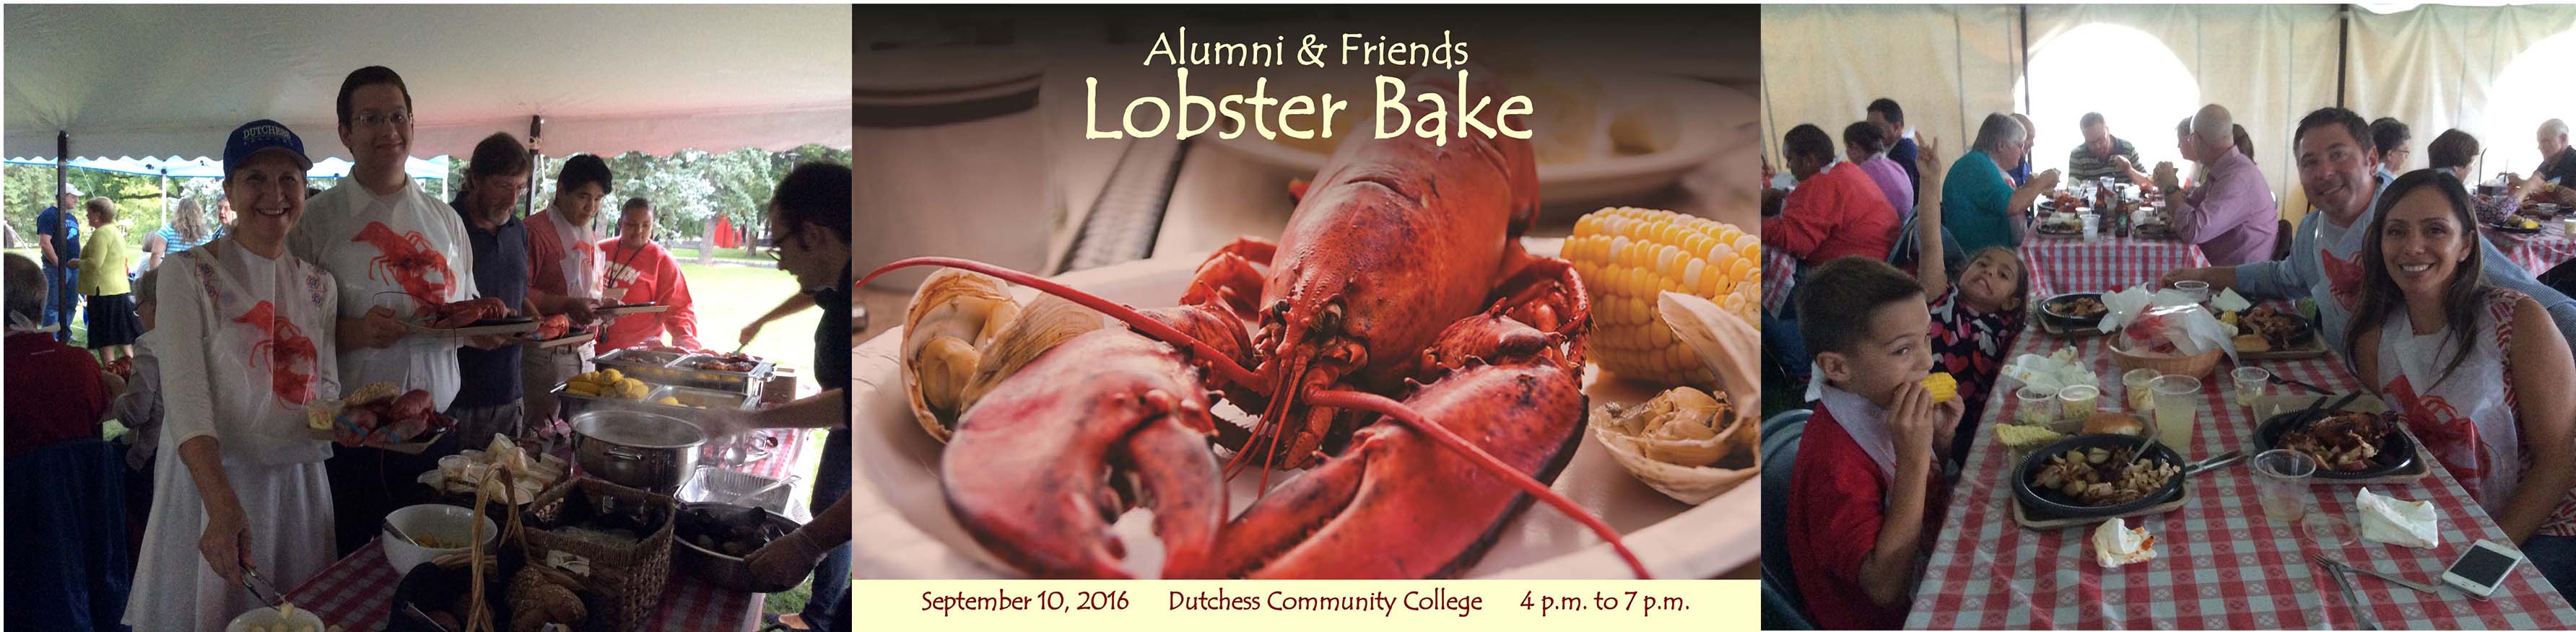 DCCF Lobster Bake 2016